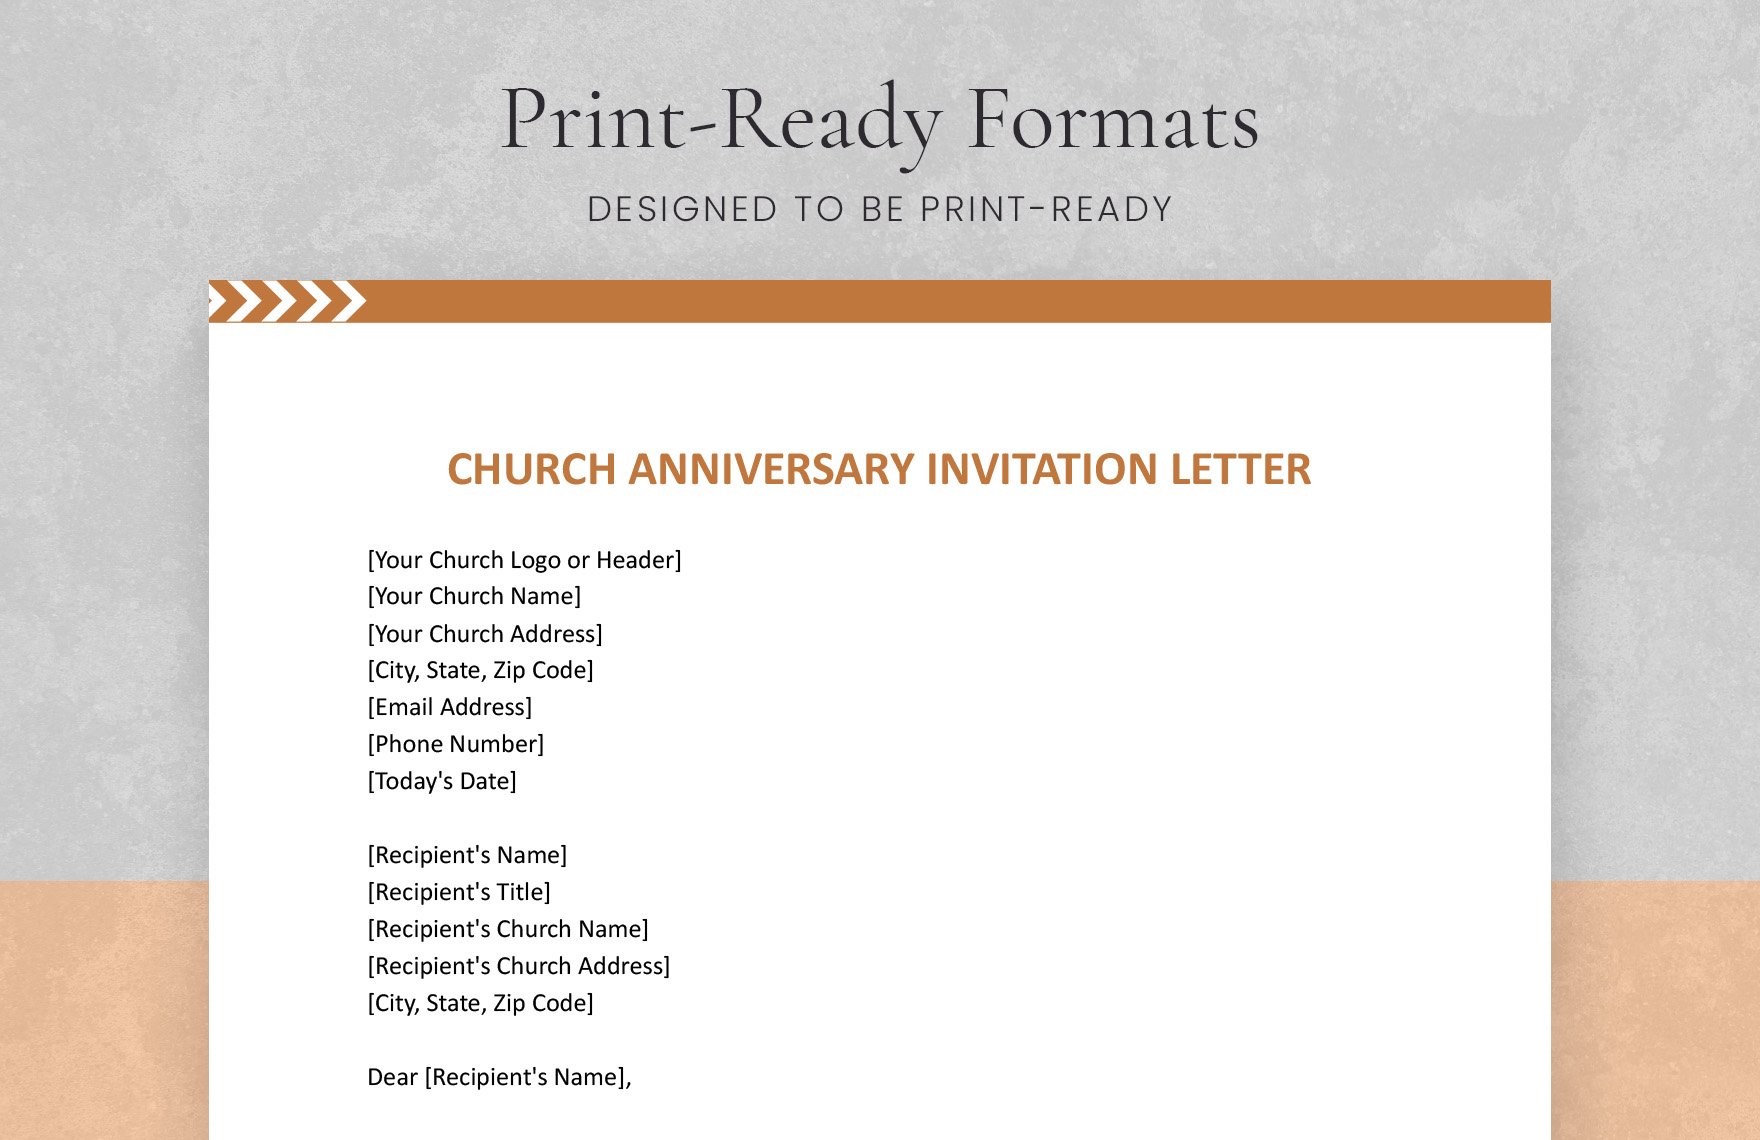 Church Anniversary Invitation Letter